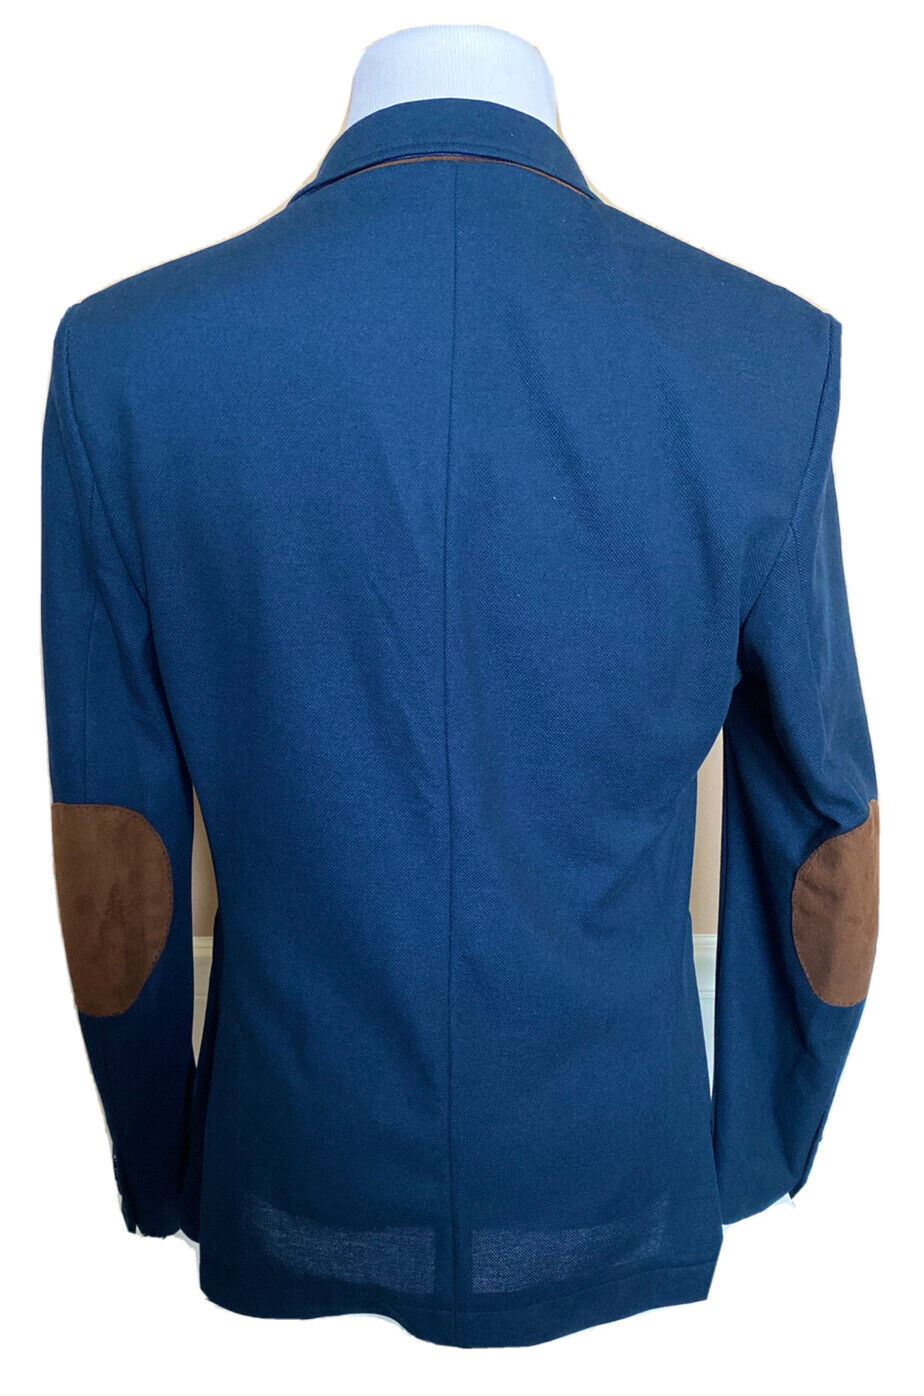 Спортивная куртка ZARA MAN из 100% полиэстера, размер 40, США (50 евро) 